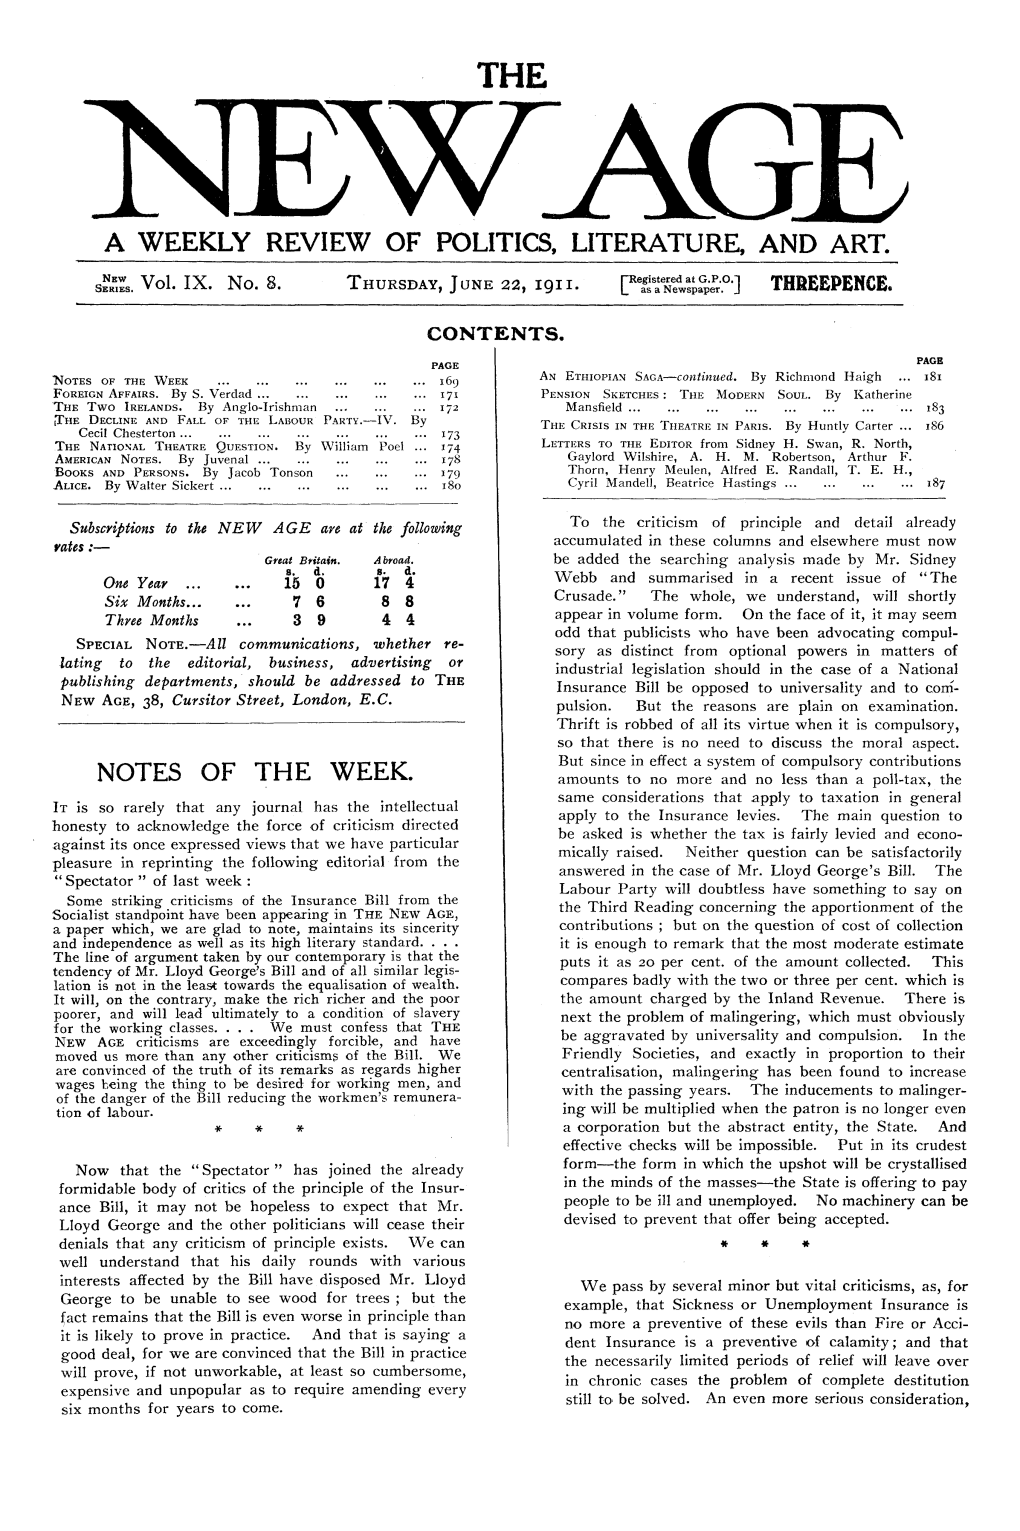 New Age, Vol. 9, No.8, June 22, 1911